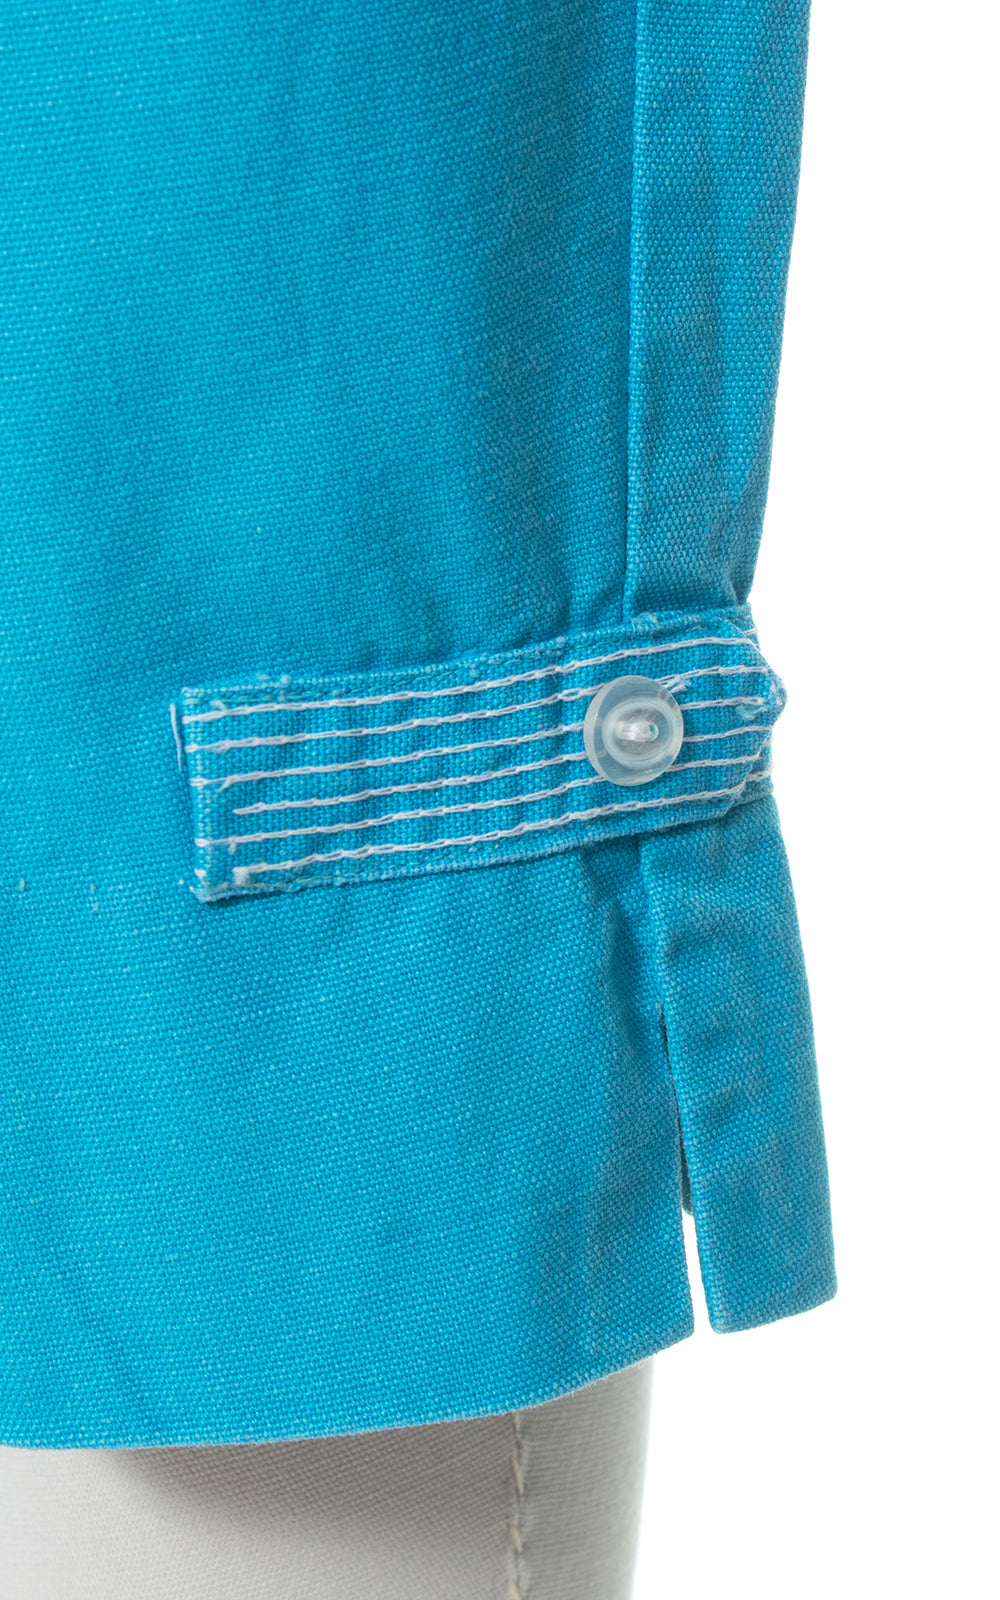 1950s Chainstitch Trim Cotton Capri Pants